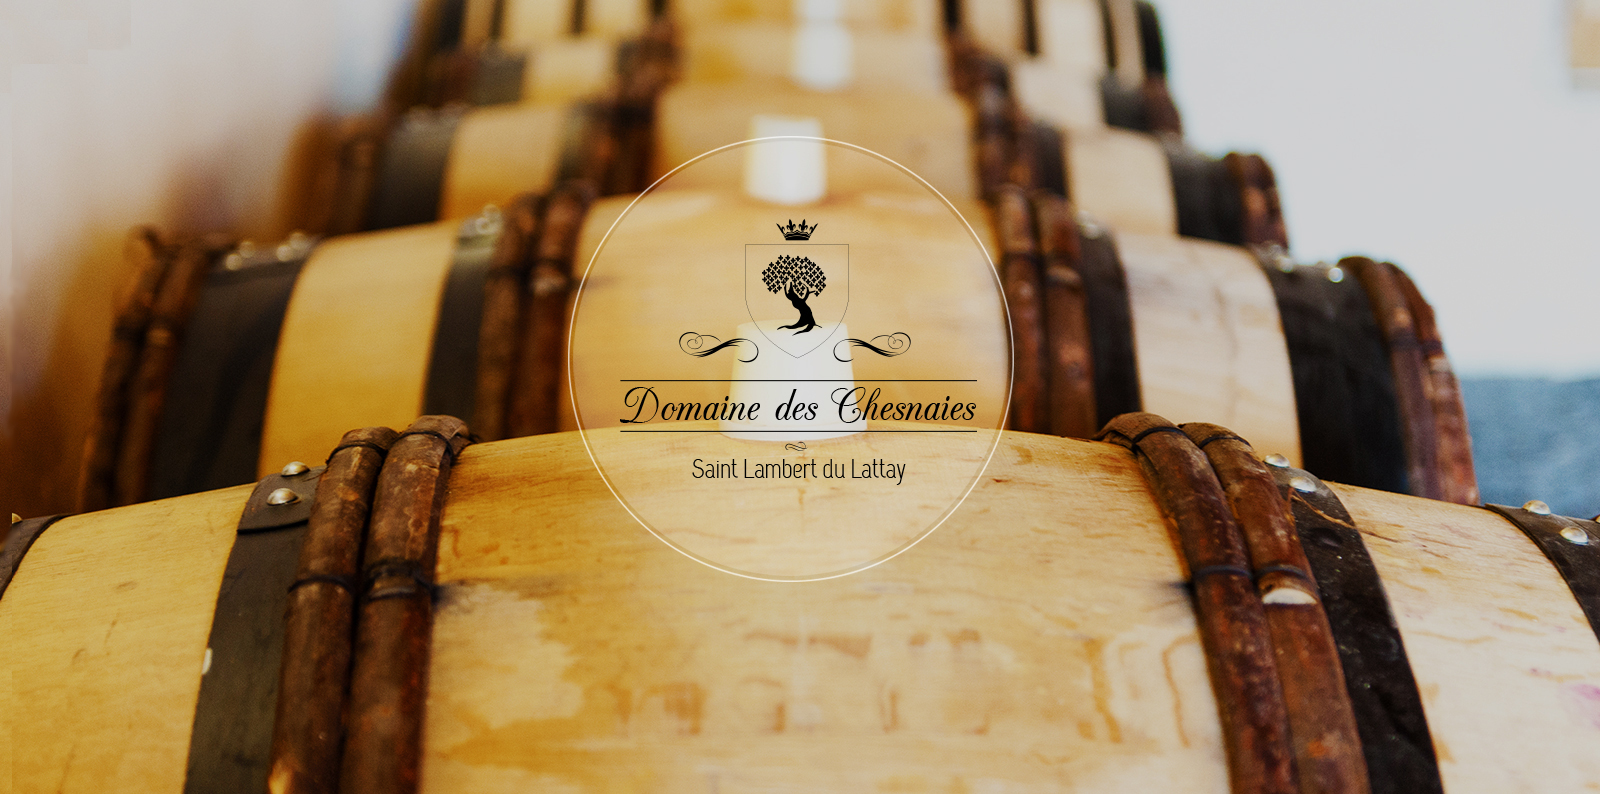 Découvrez les vins du Domaine des Chesnaies, un des grands terroirs du Val de Loire